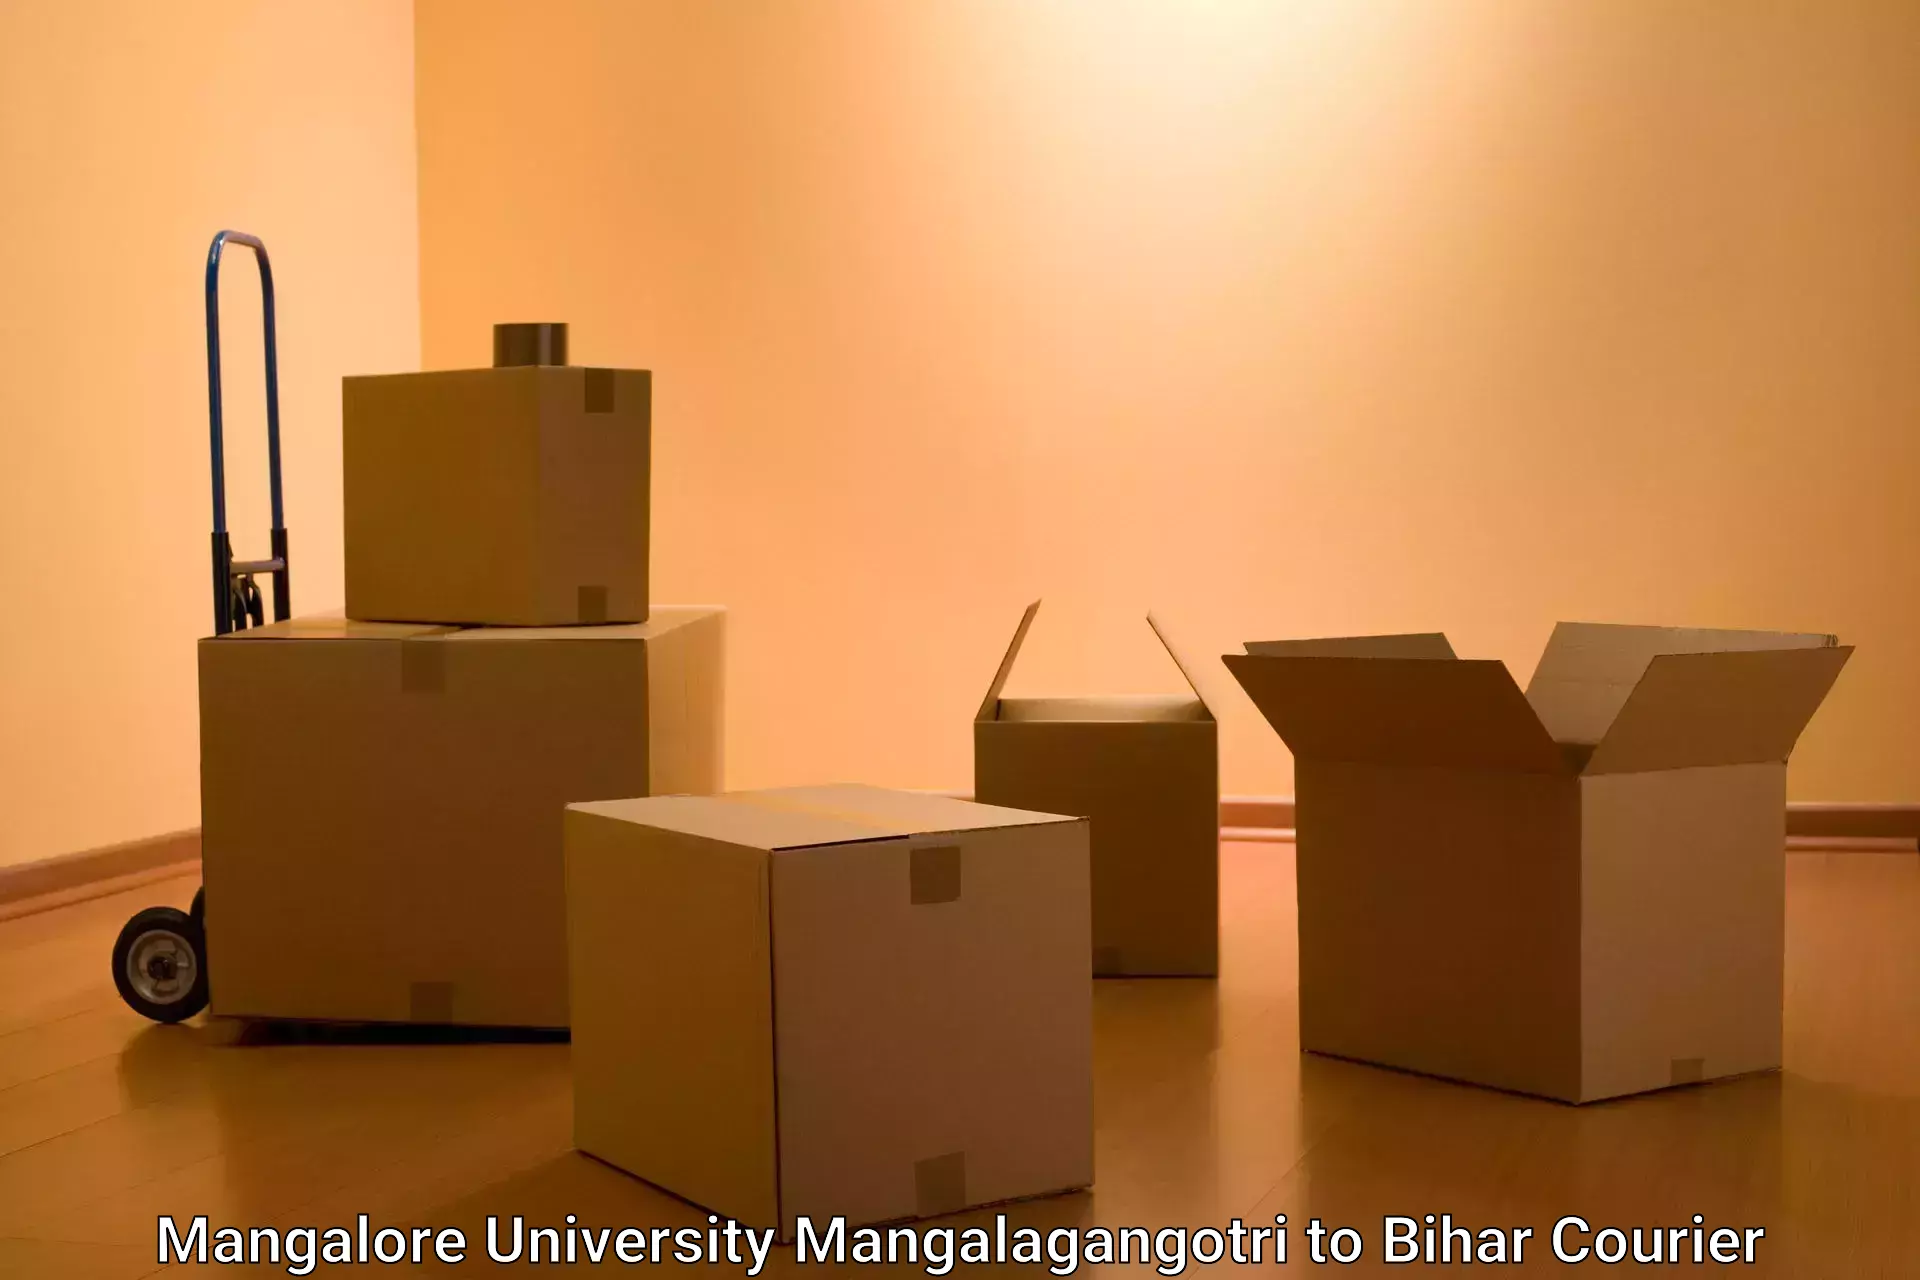 Cash on delivery service Mangalore University Mangalagangotri to Bhagalpur